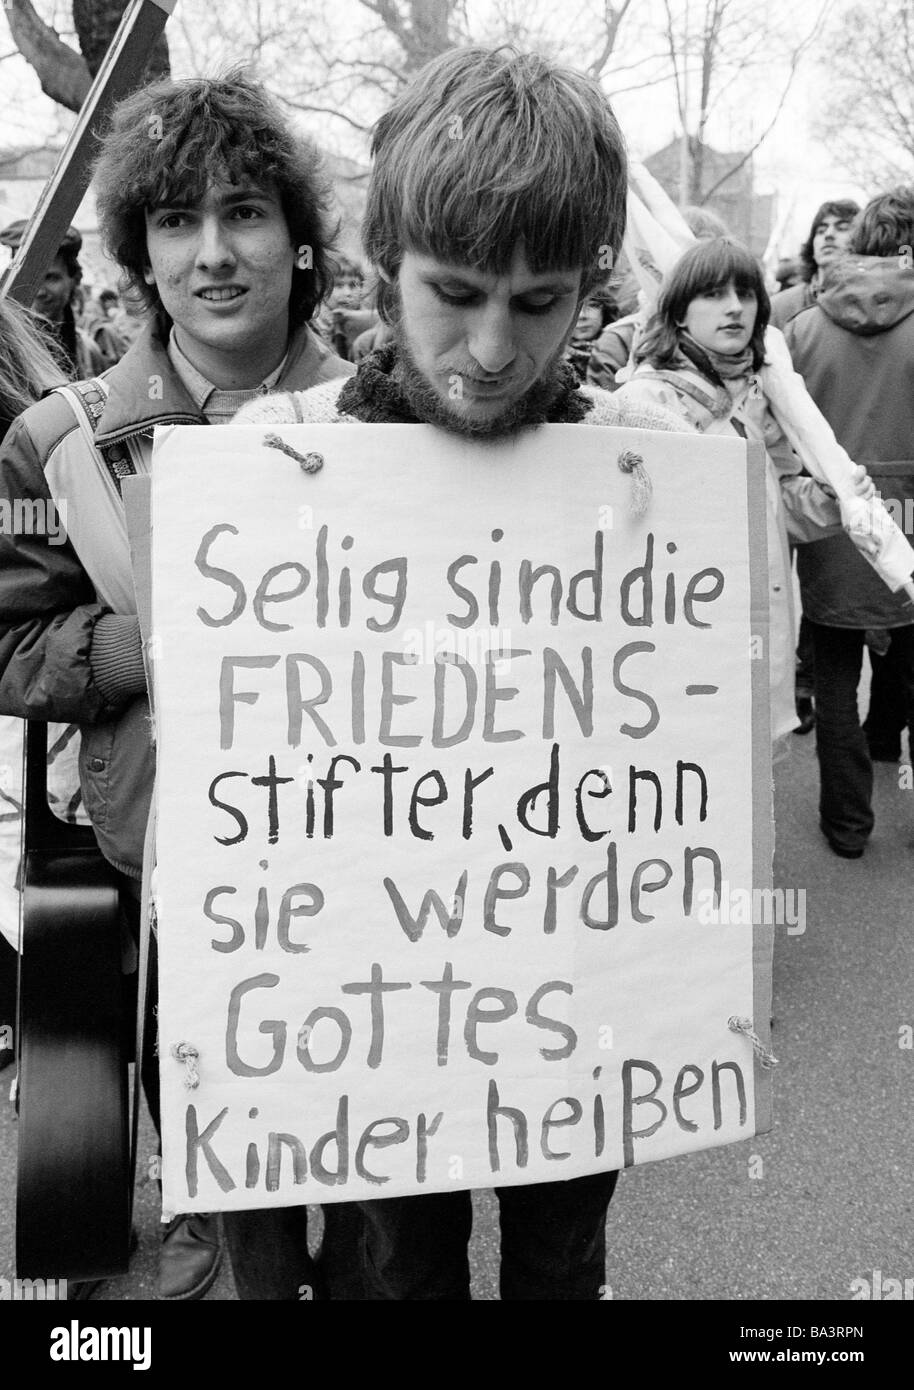 Années 1980, photo en noir et blanc, les gens, la paix de démonstration, des marches de Pâques 1983 en Allemagne contre l'armement nucléaire, jeune homme présente un signe de protestation, âgés de 20 à 25 ans, D-Oberhausen, Ruhr, Rhénanie du Nord-Westphalie Banque D'Images